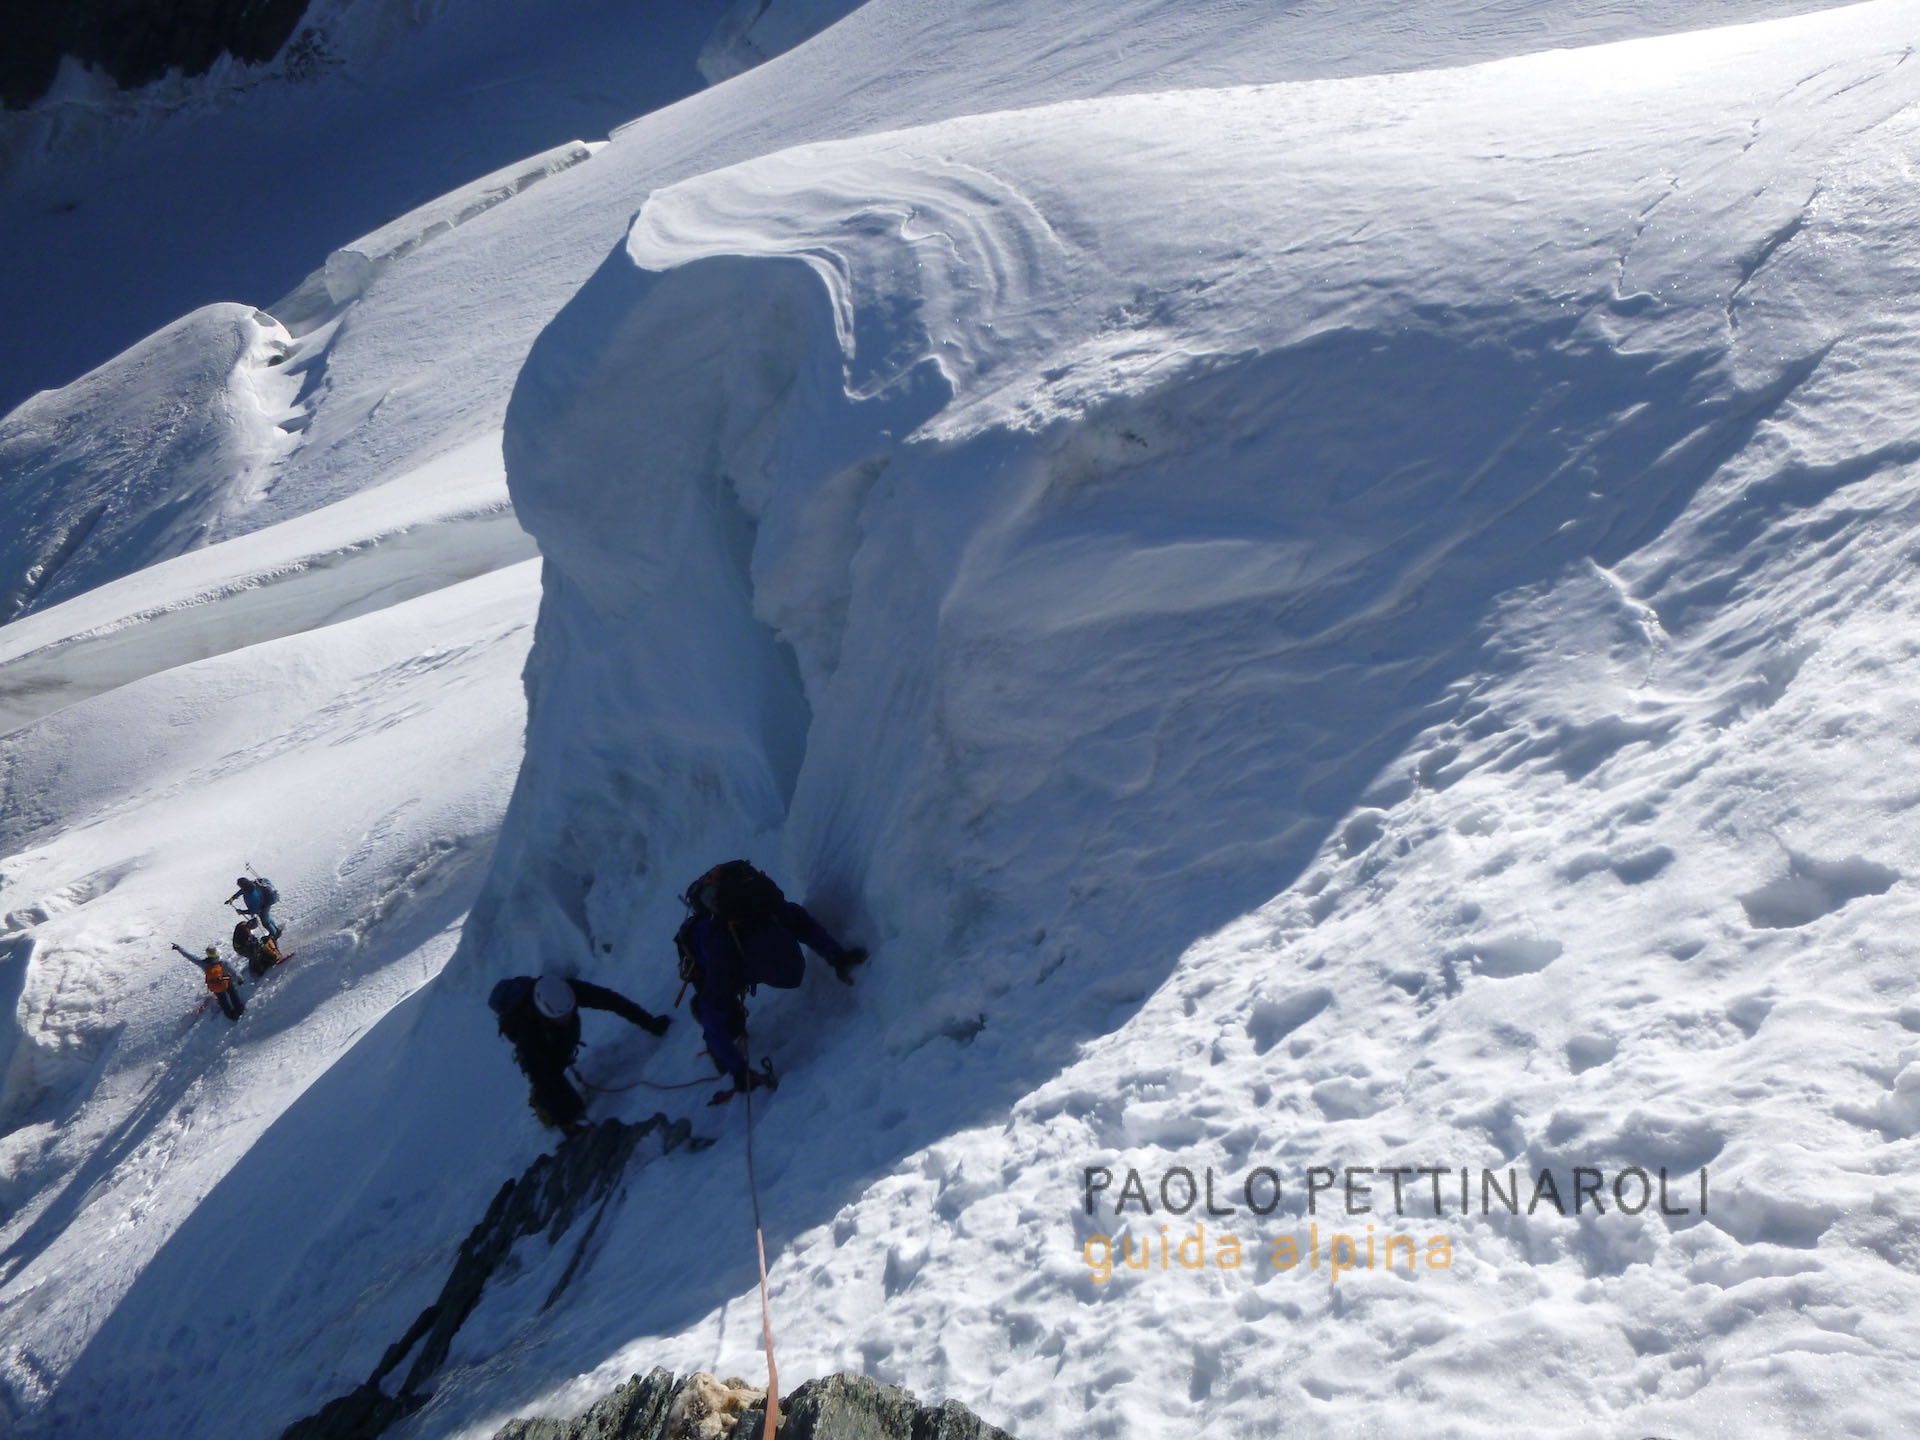 Dom - 1 di 3 - alpinismo_paolo pettinaroli guida alpina